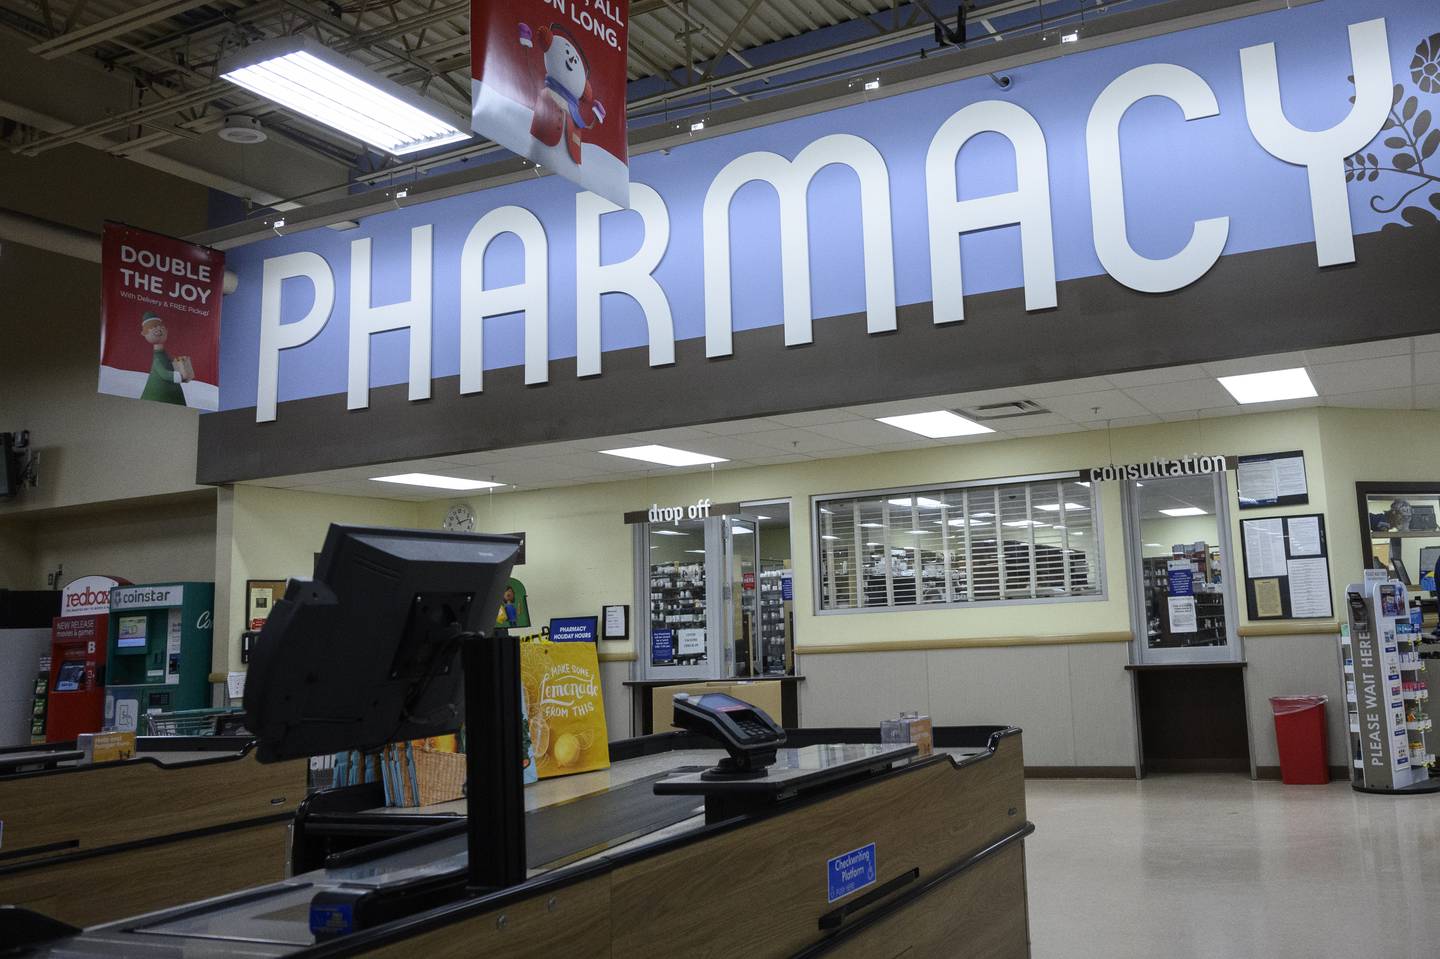 a "pharmacy" sign